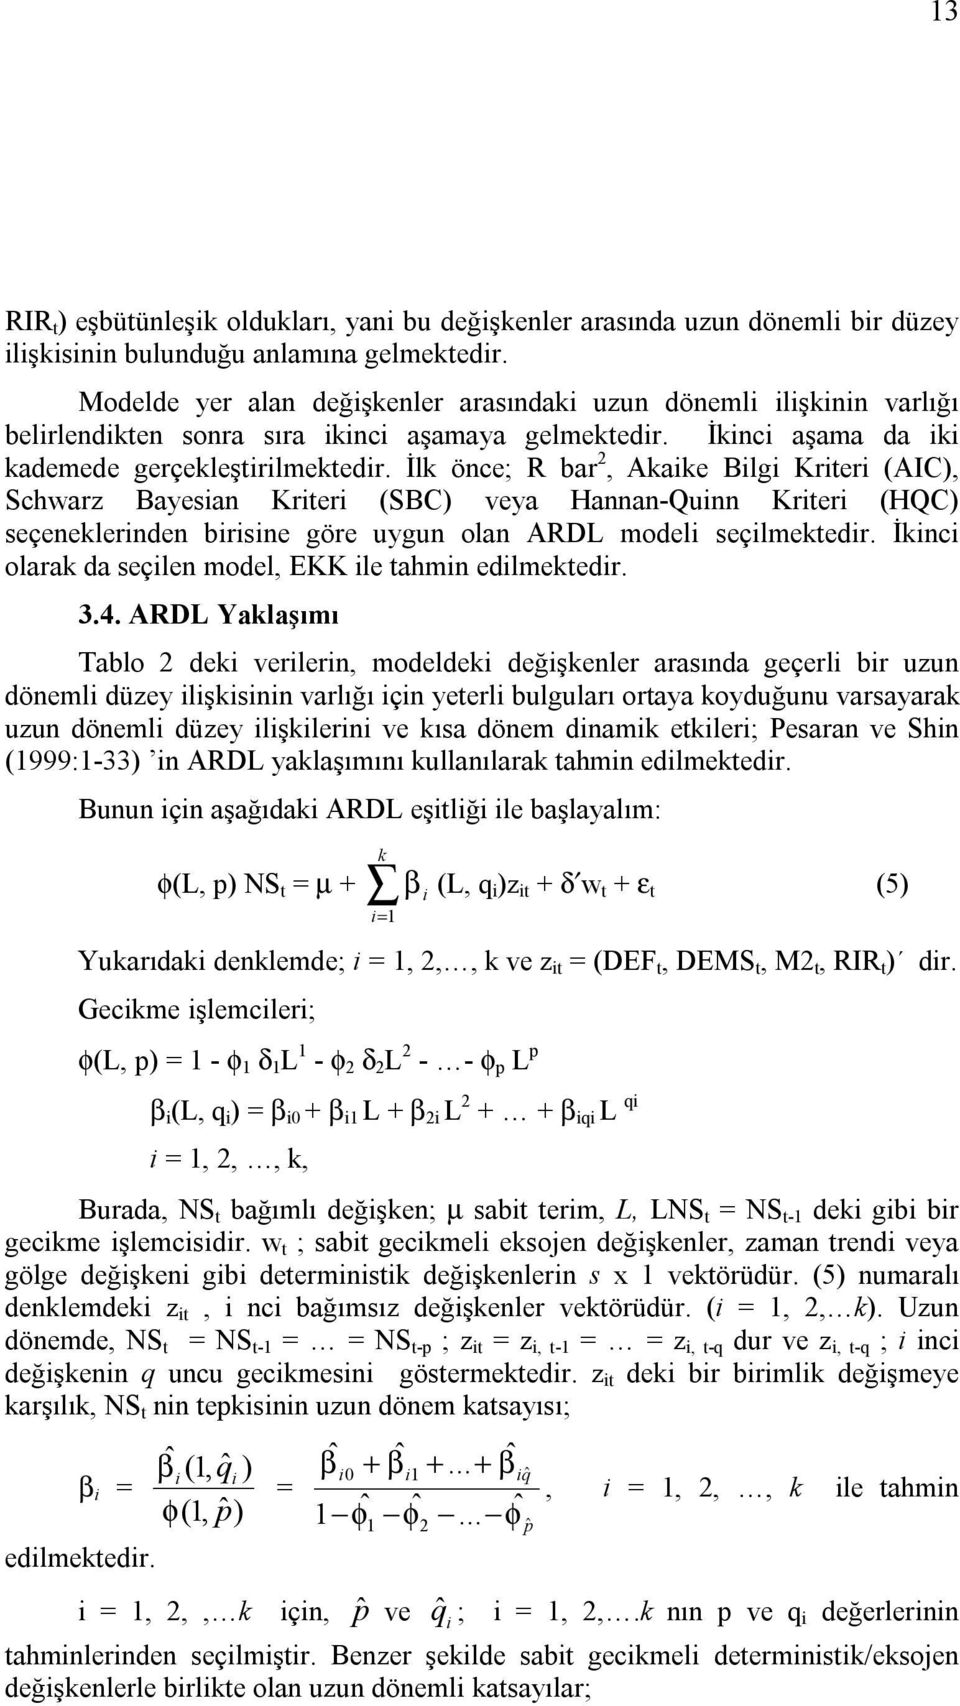 İlk önce; R bar 2, Akaike Bilgi Kriteri (AIC), Schwarz Bayesian Kriteri (SBC) veya Hannan-Quinn Kriteri (HQC) seçeneklerinden birisine göre uygun olan ARDL modeli seçilmektedir.